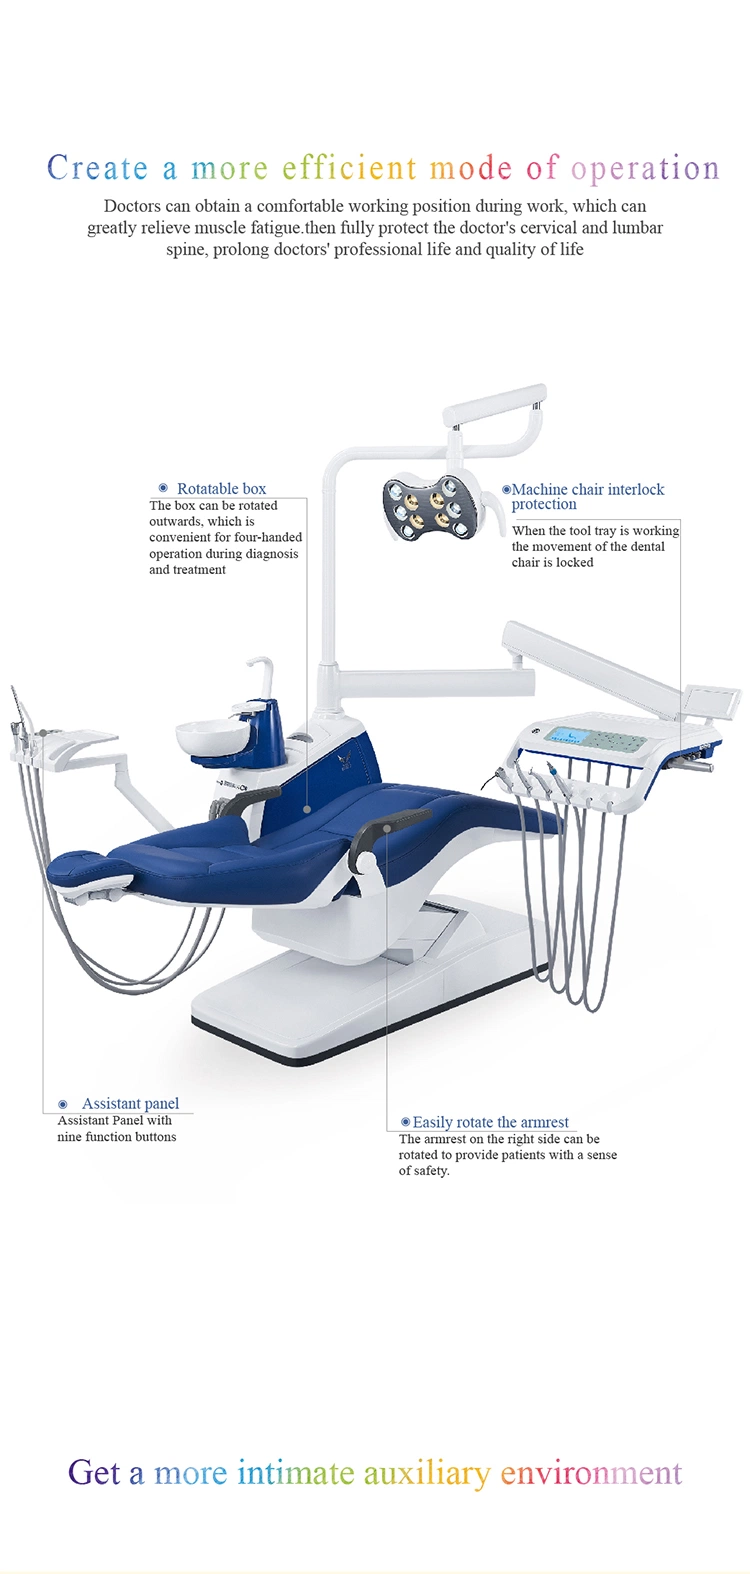 LED Sensor Light FDA&Isoapproved Dental Chair Dental Chair Specifications/Supply Dental/Dental Care Equipment